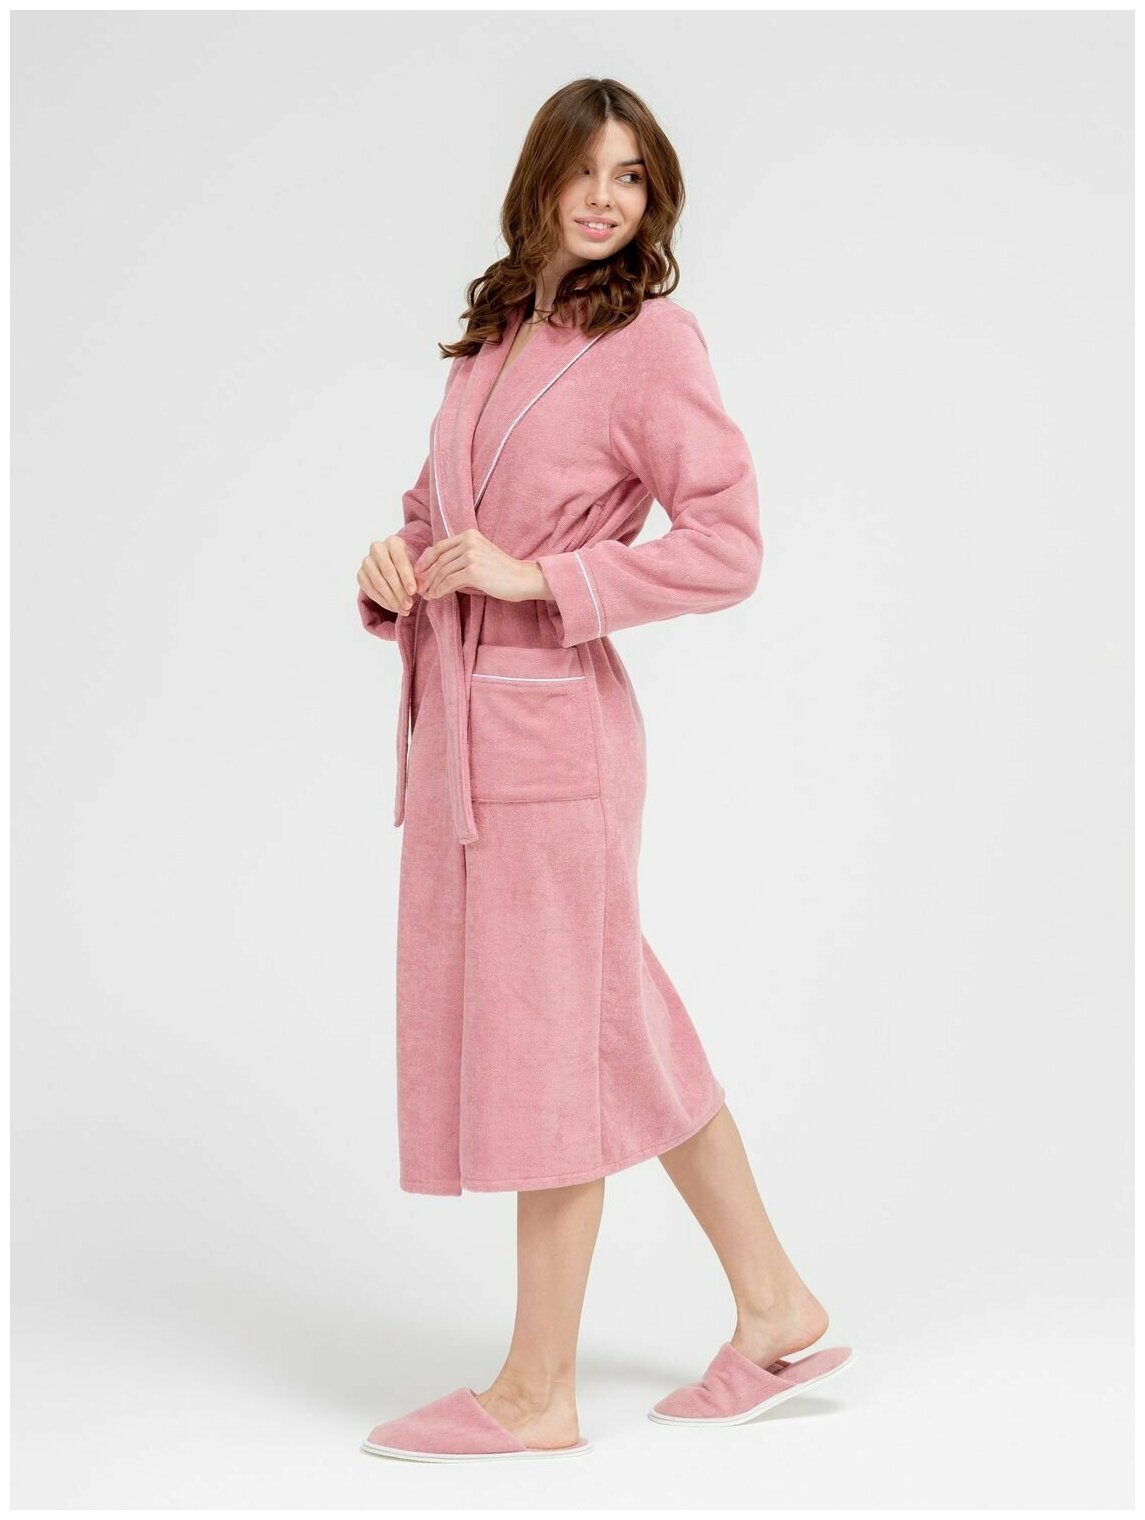 Женский махровый халат с кантом Росхалат, пудрово-розовый. Размер 50-52 - фотография № 6